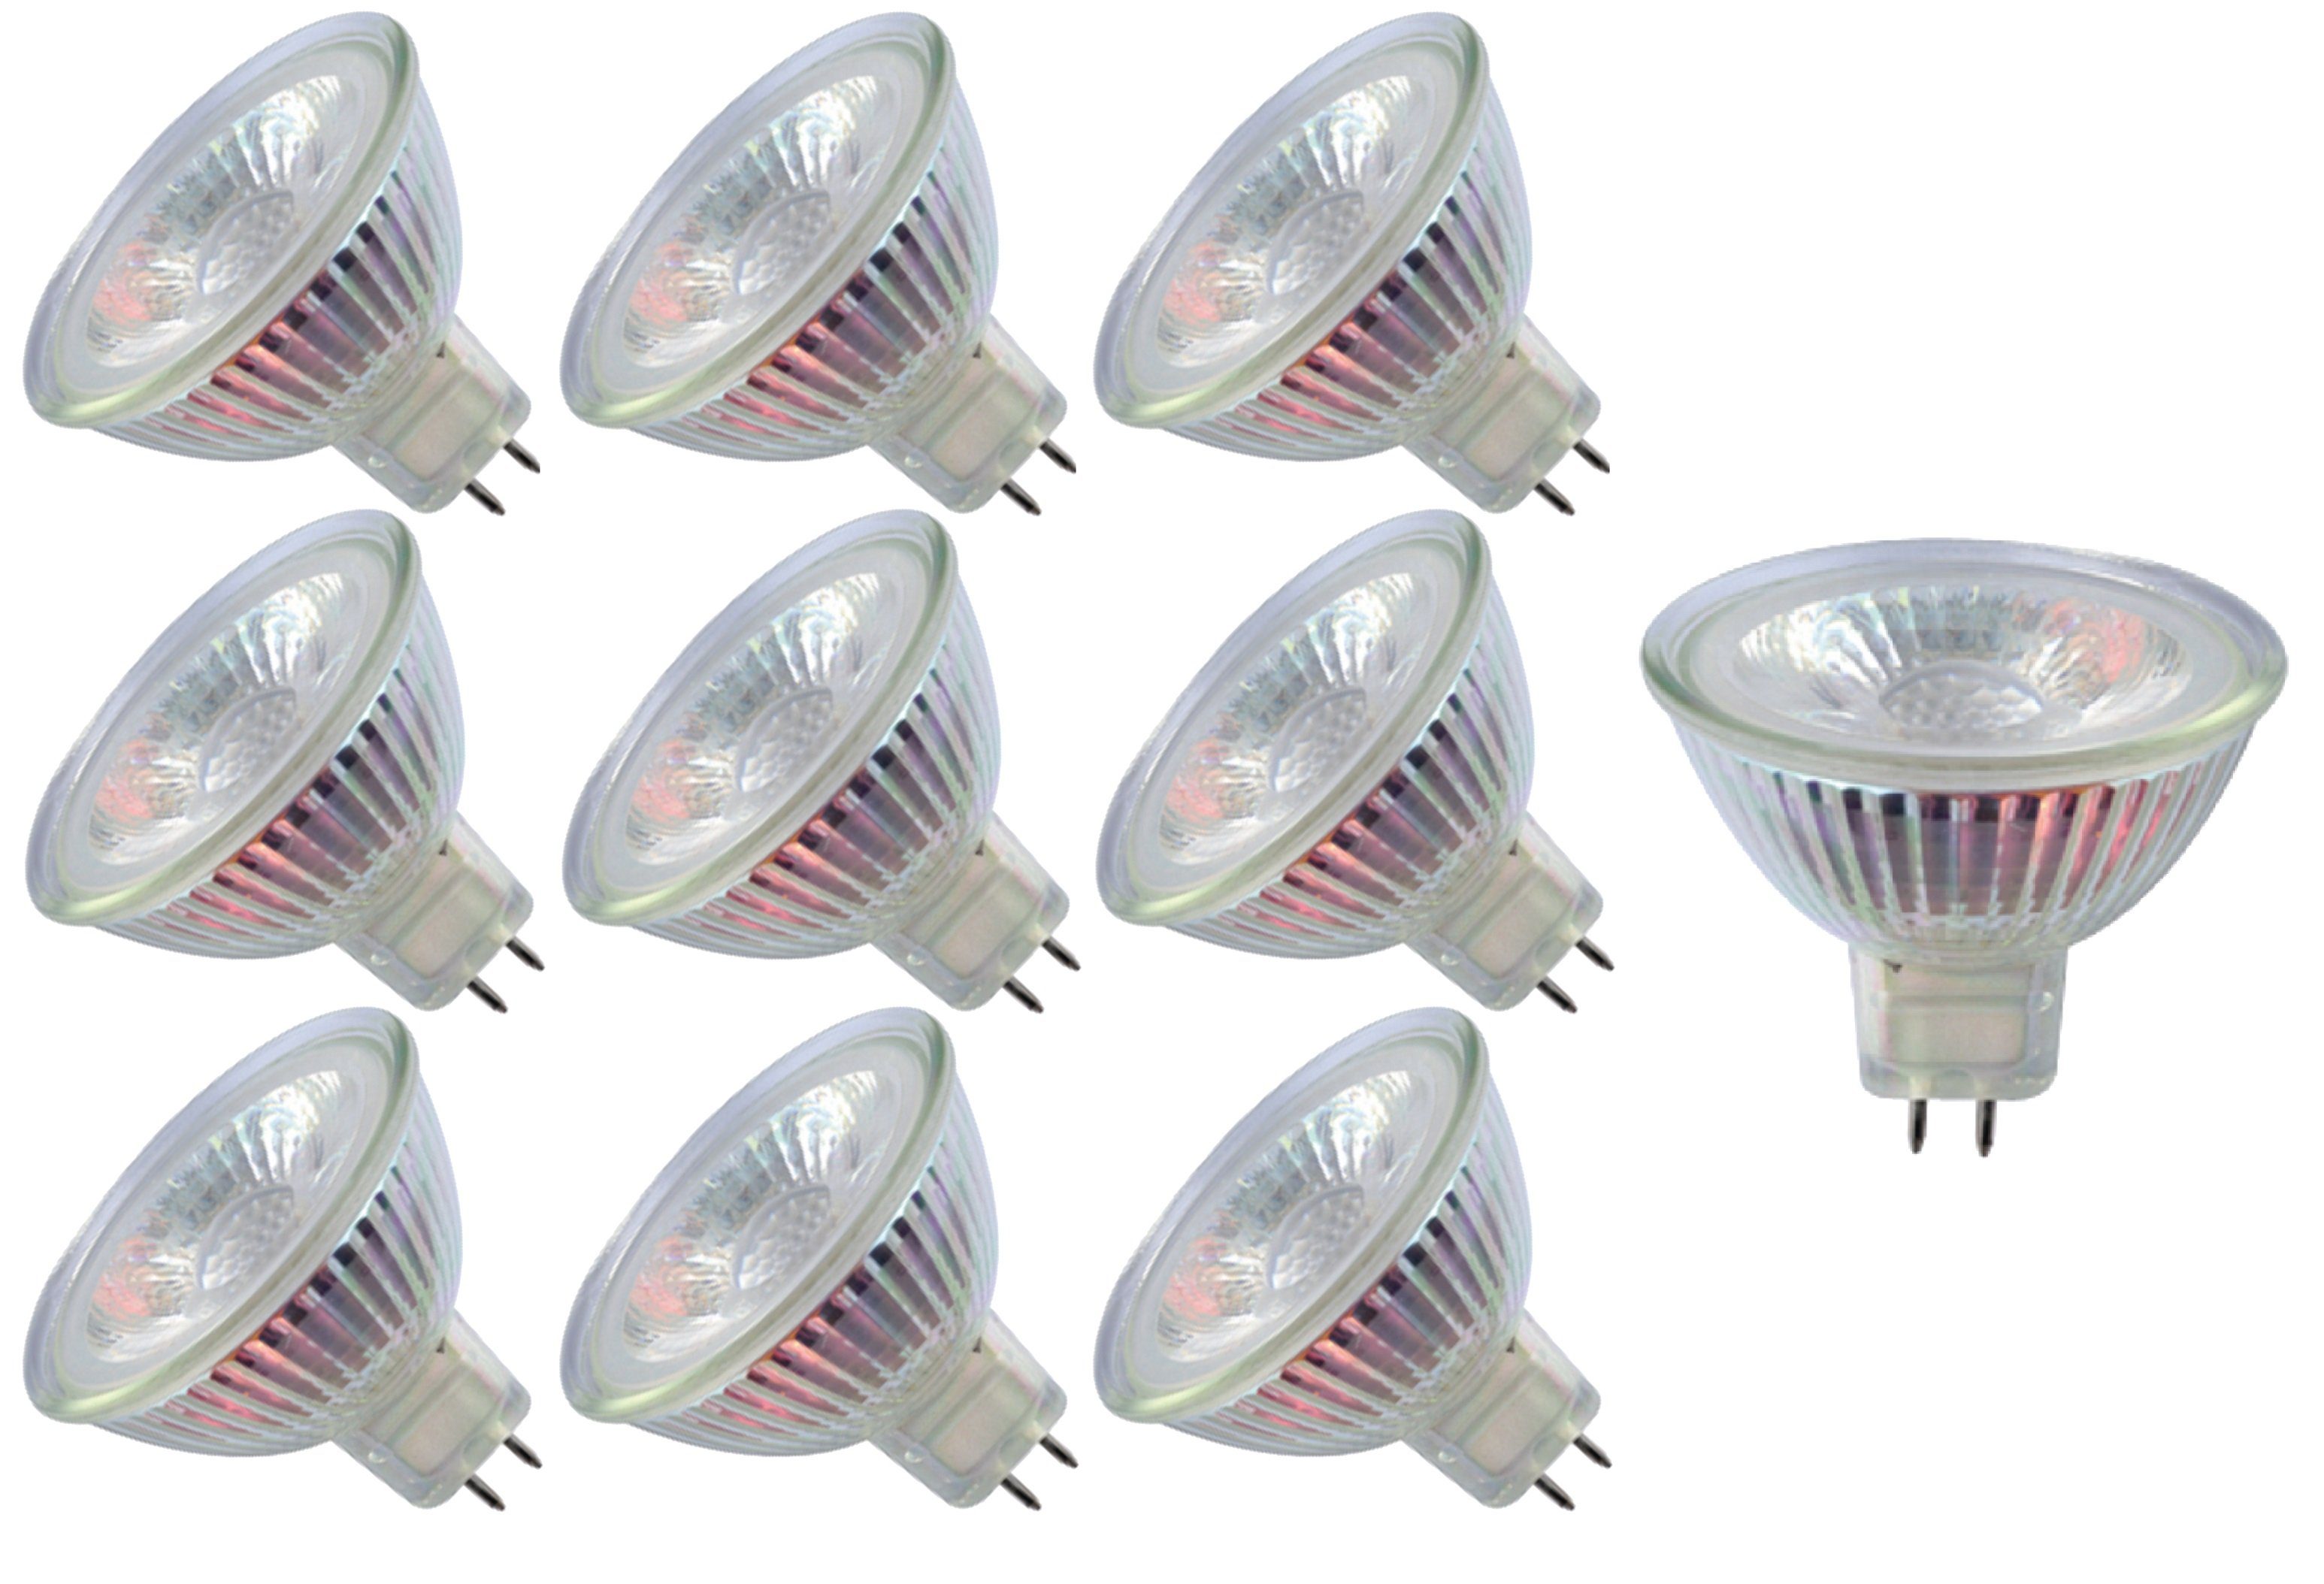 TRANGO LED-Leuchtmittel, 10er Set MR16-NT3 LED Leuchtmittel mit MR16 Fassung zum Austausch von herkömmlichen Halogen Leuchtmittel MR16 I GU5.3 I G4 12 Volt 3000K warmweiß, 10 St., Glühlampe, Reflektor Lampe, LED Birnen